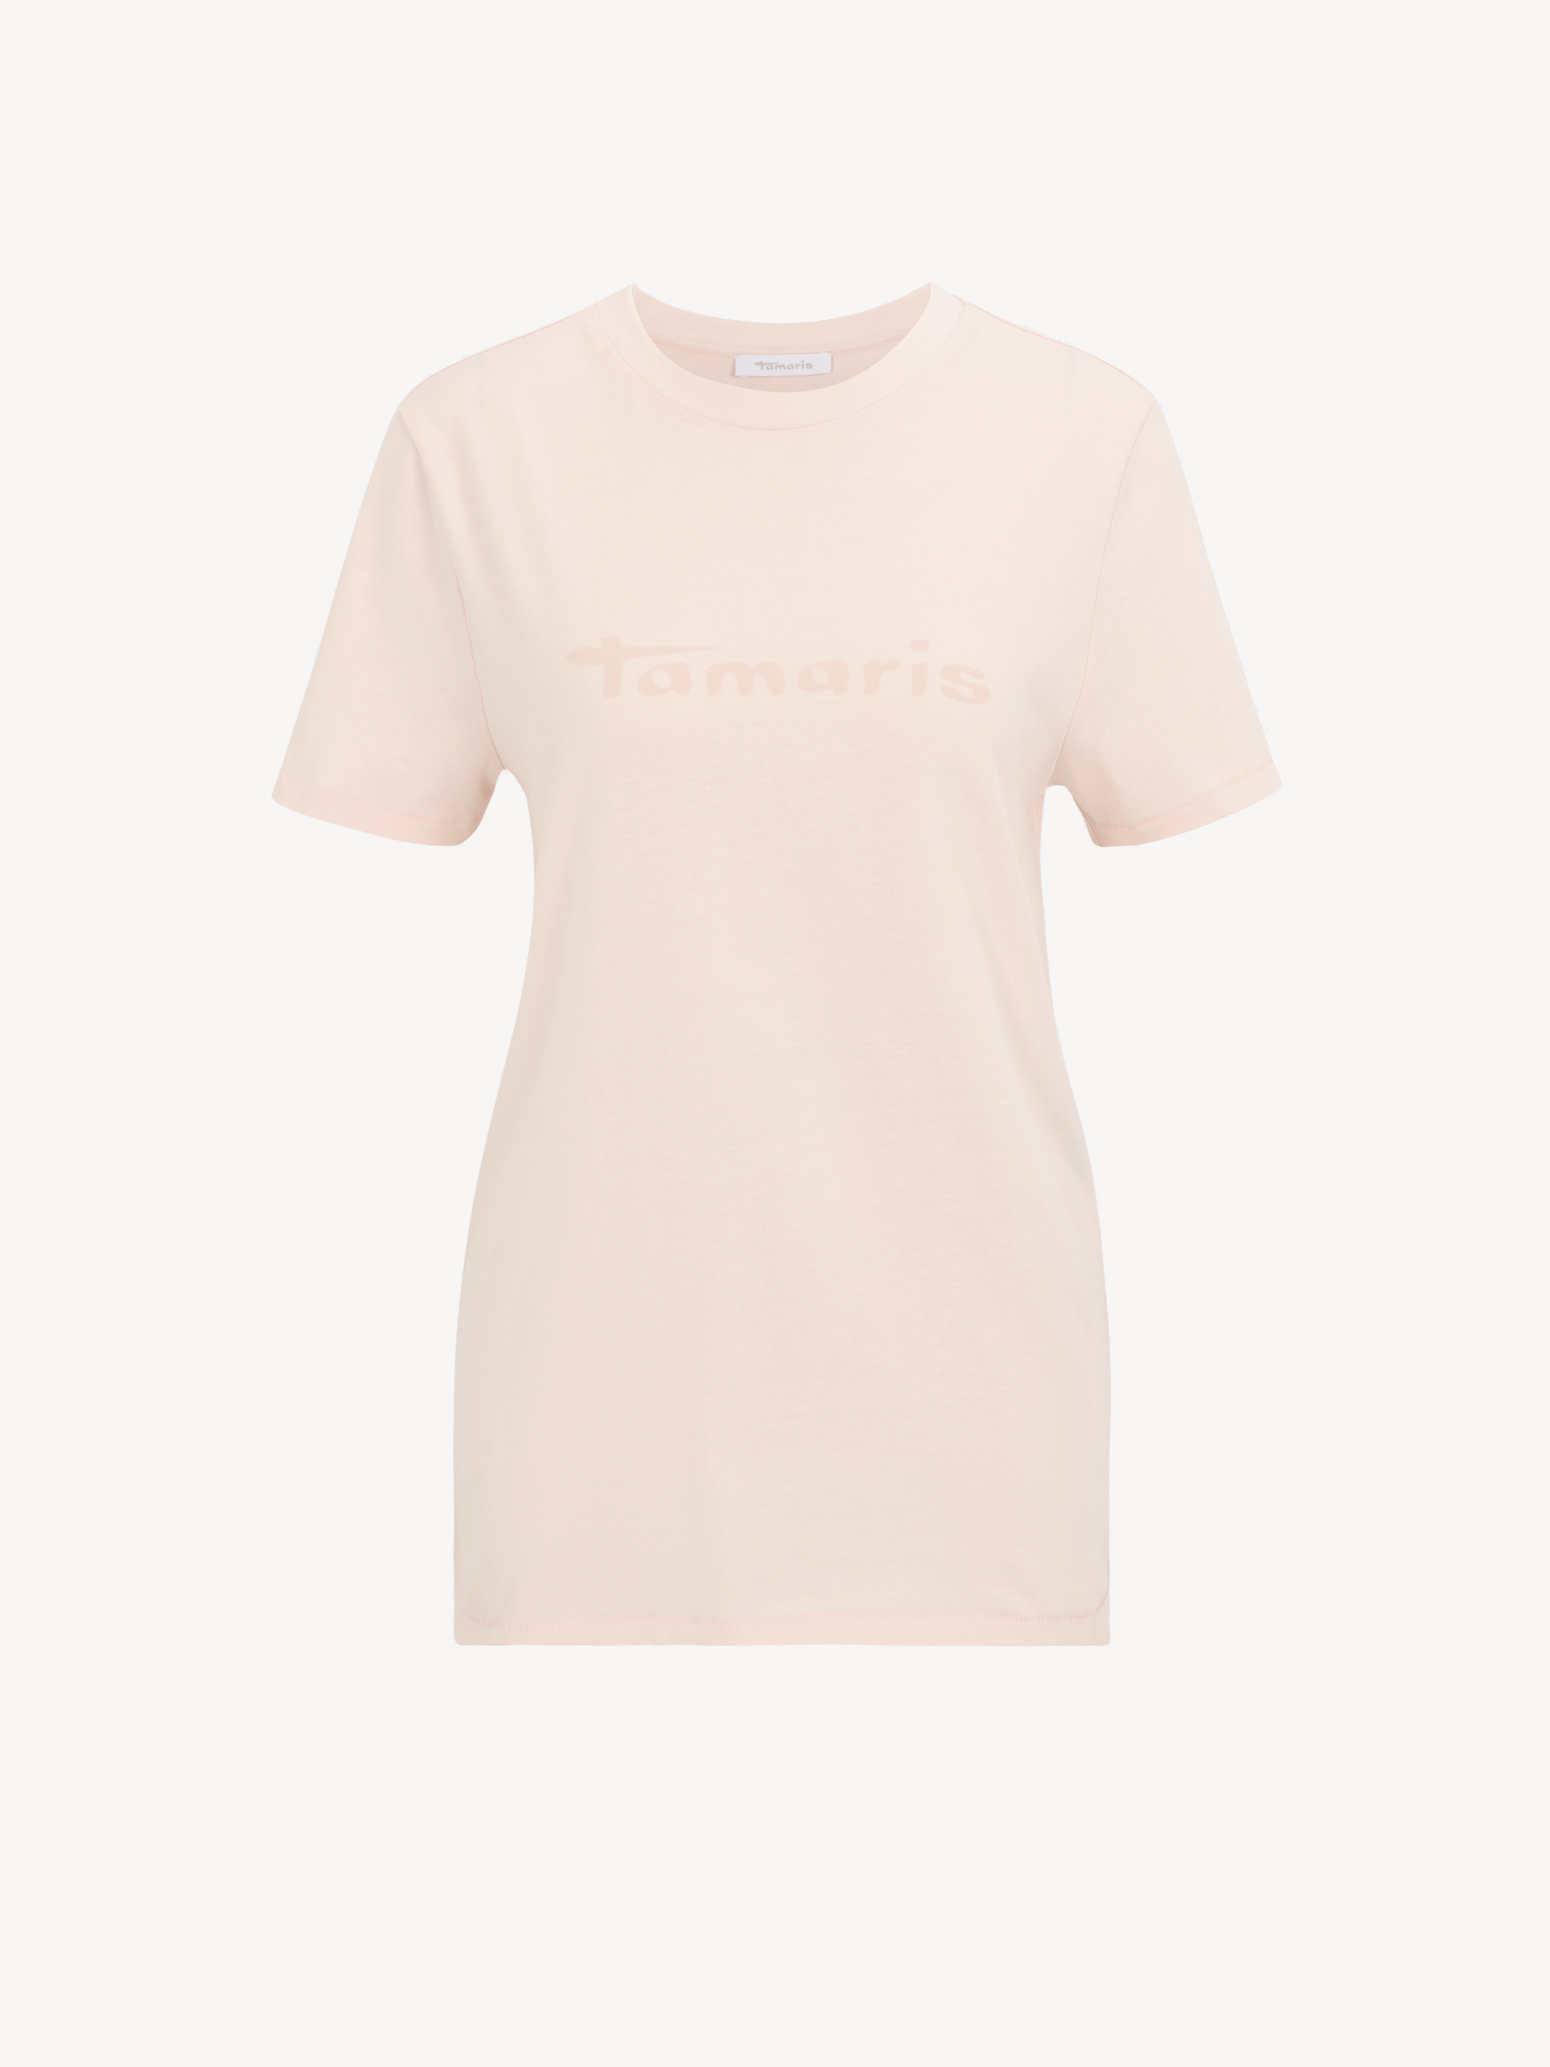 Buy online & now! Tamaris Tops Shirts